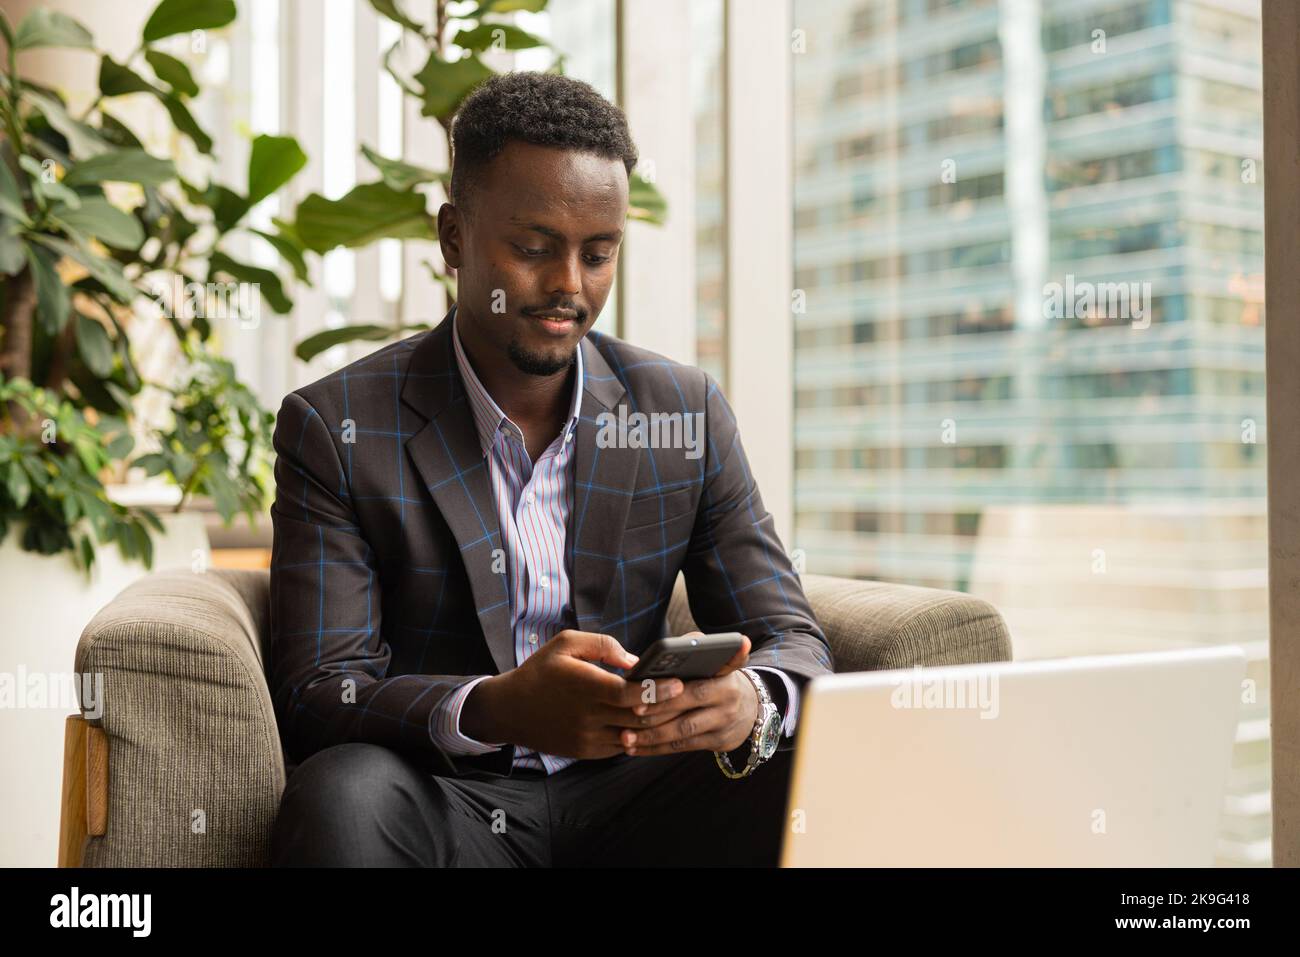 Ritratto di un uomo d'affari africano seduto in una caffetteria utilizzando un computer portatile Foto Stock